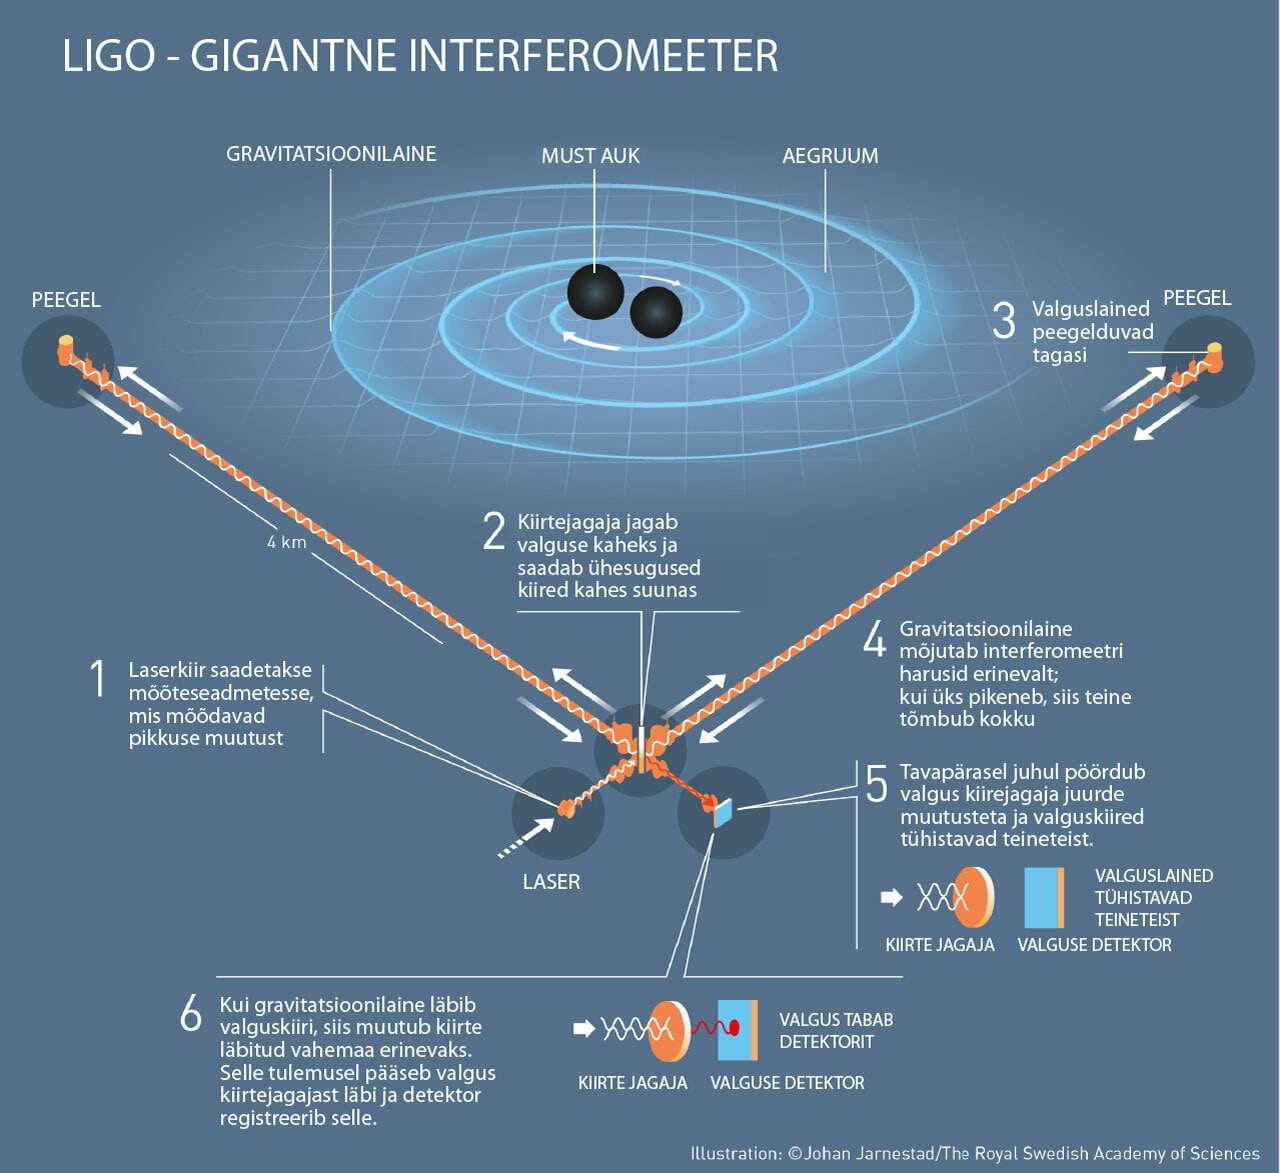 Kuidas LIGO gravitatsioonilaineid mõõtis